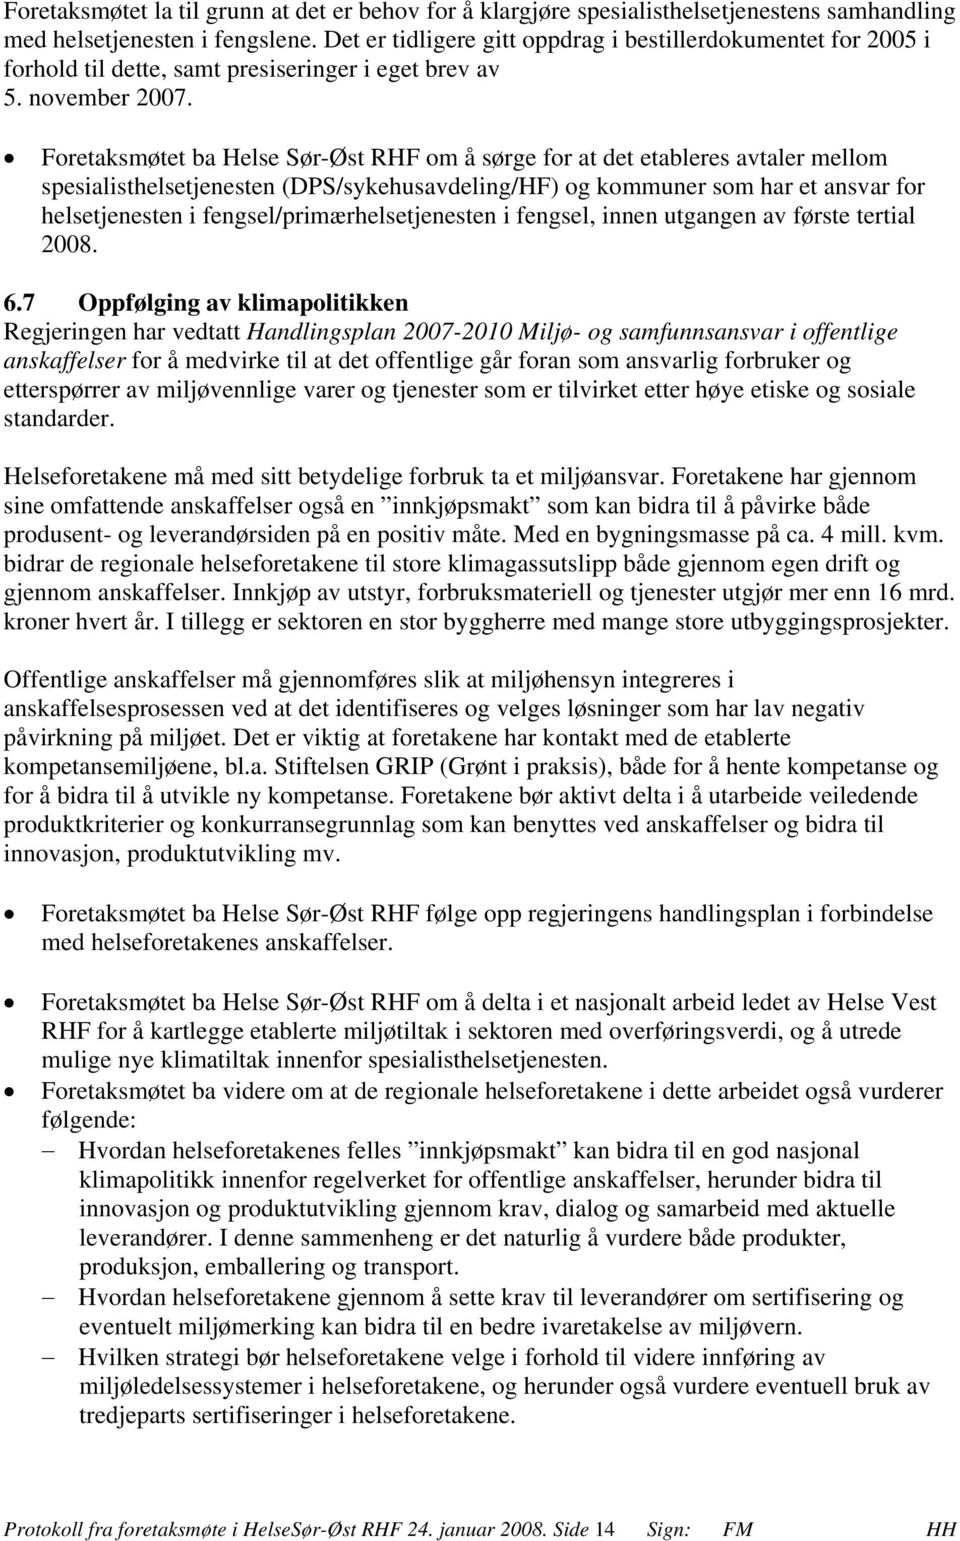 Foretaksmøtet ba Helse Sør-Øst RHF om å sørge for at det etableres avtaler mellom spesialisthelsetjenesten (DPS/sykehusavdeling/HF) og kommuner som har et ansvar for helsetjenesten i